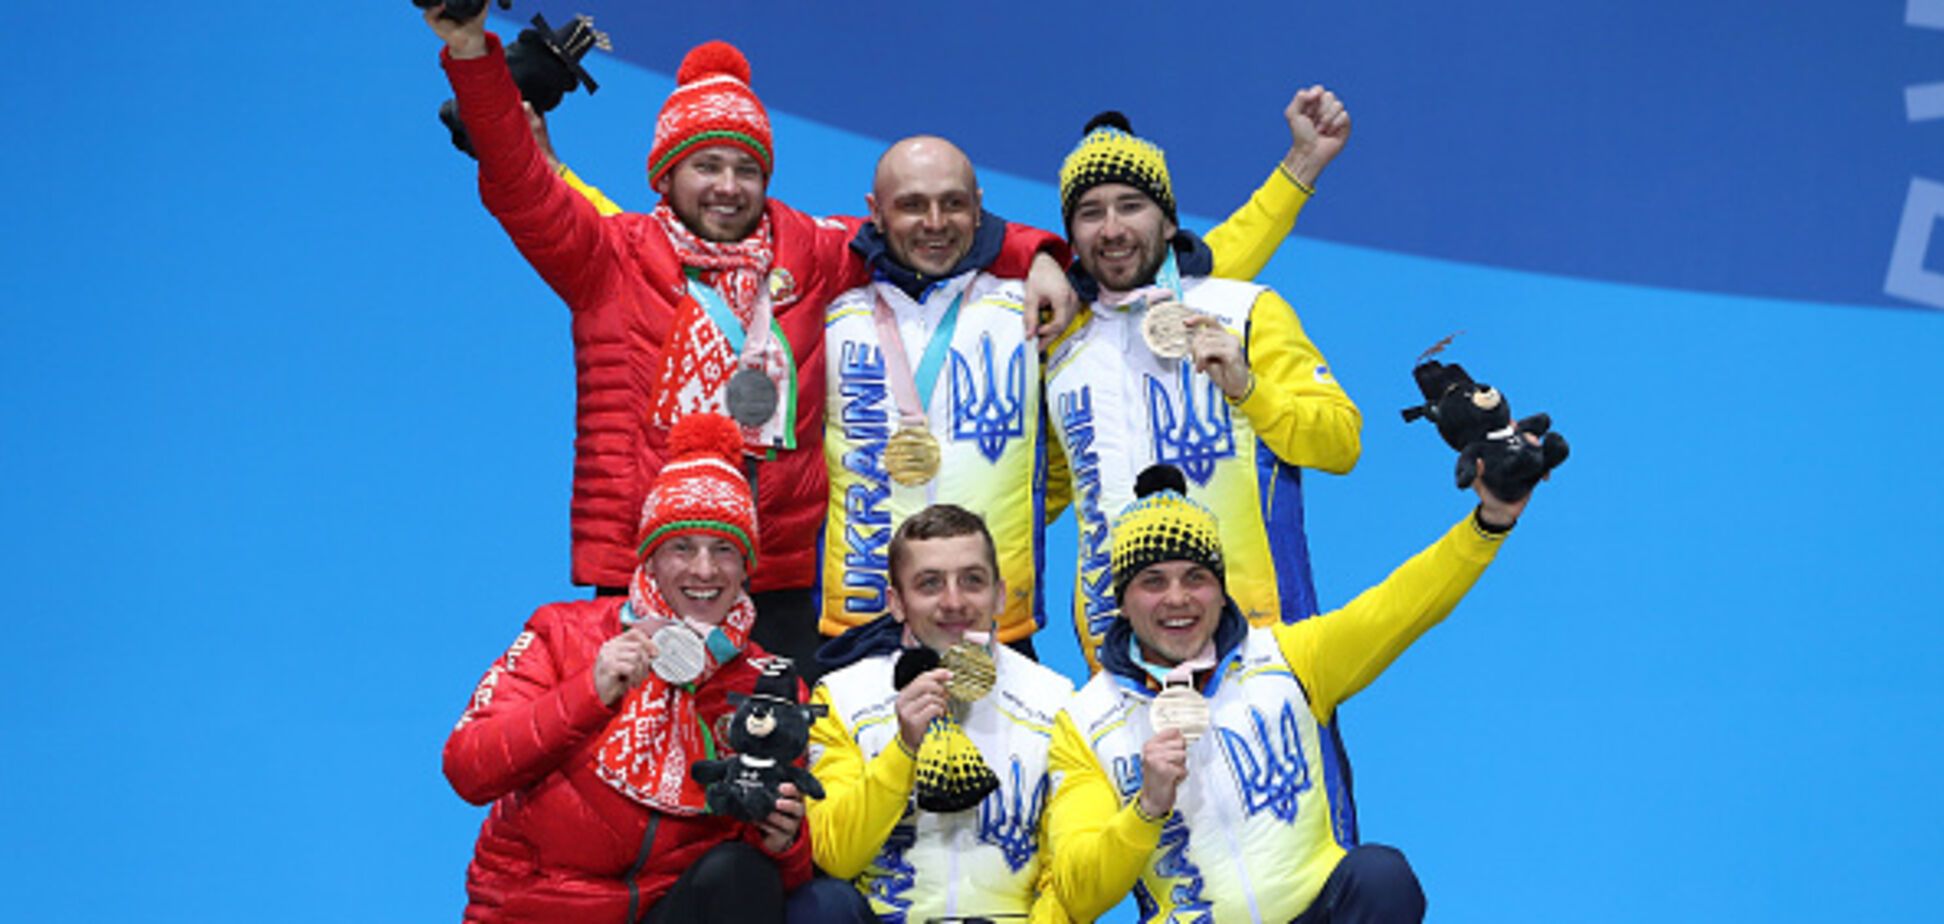 Україна увірвалася в топ-3 медального заліку Паралімпіади-2018, обігнавши росіян